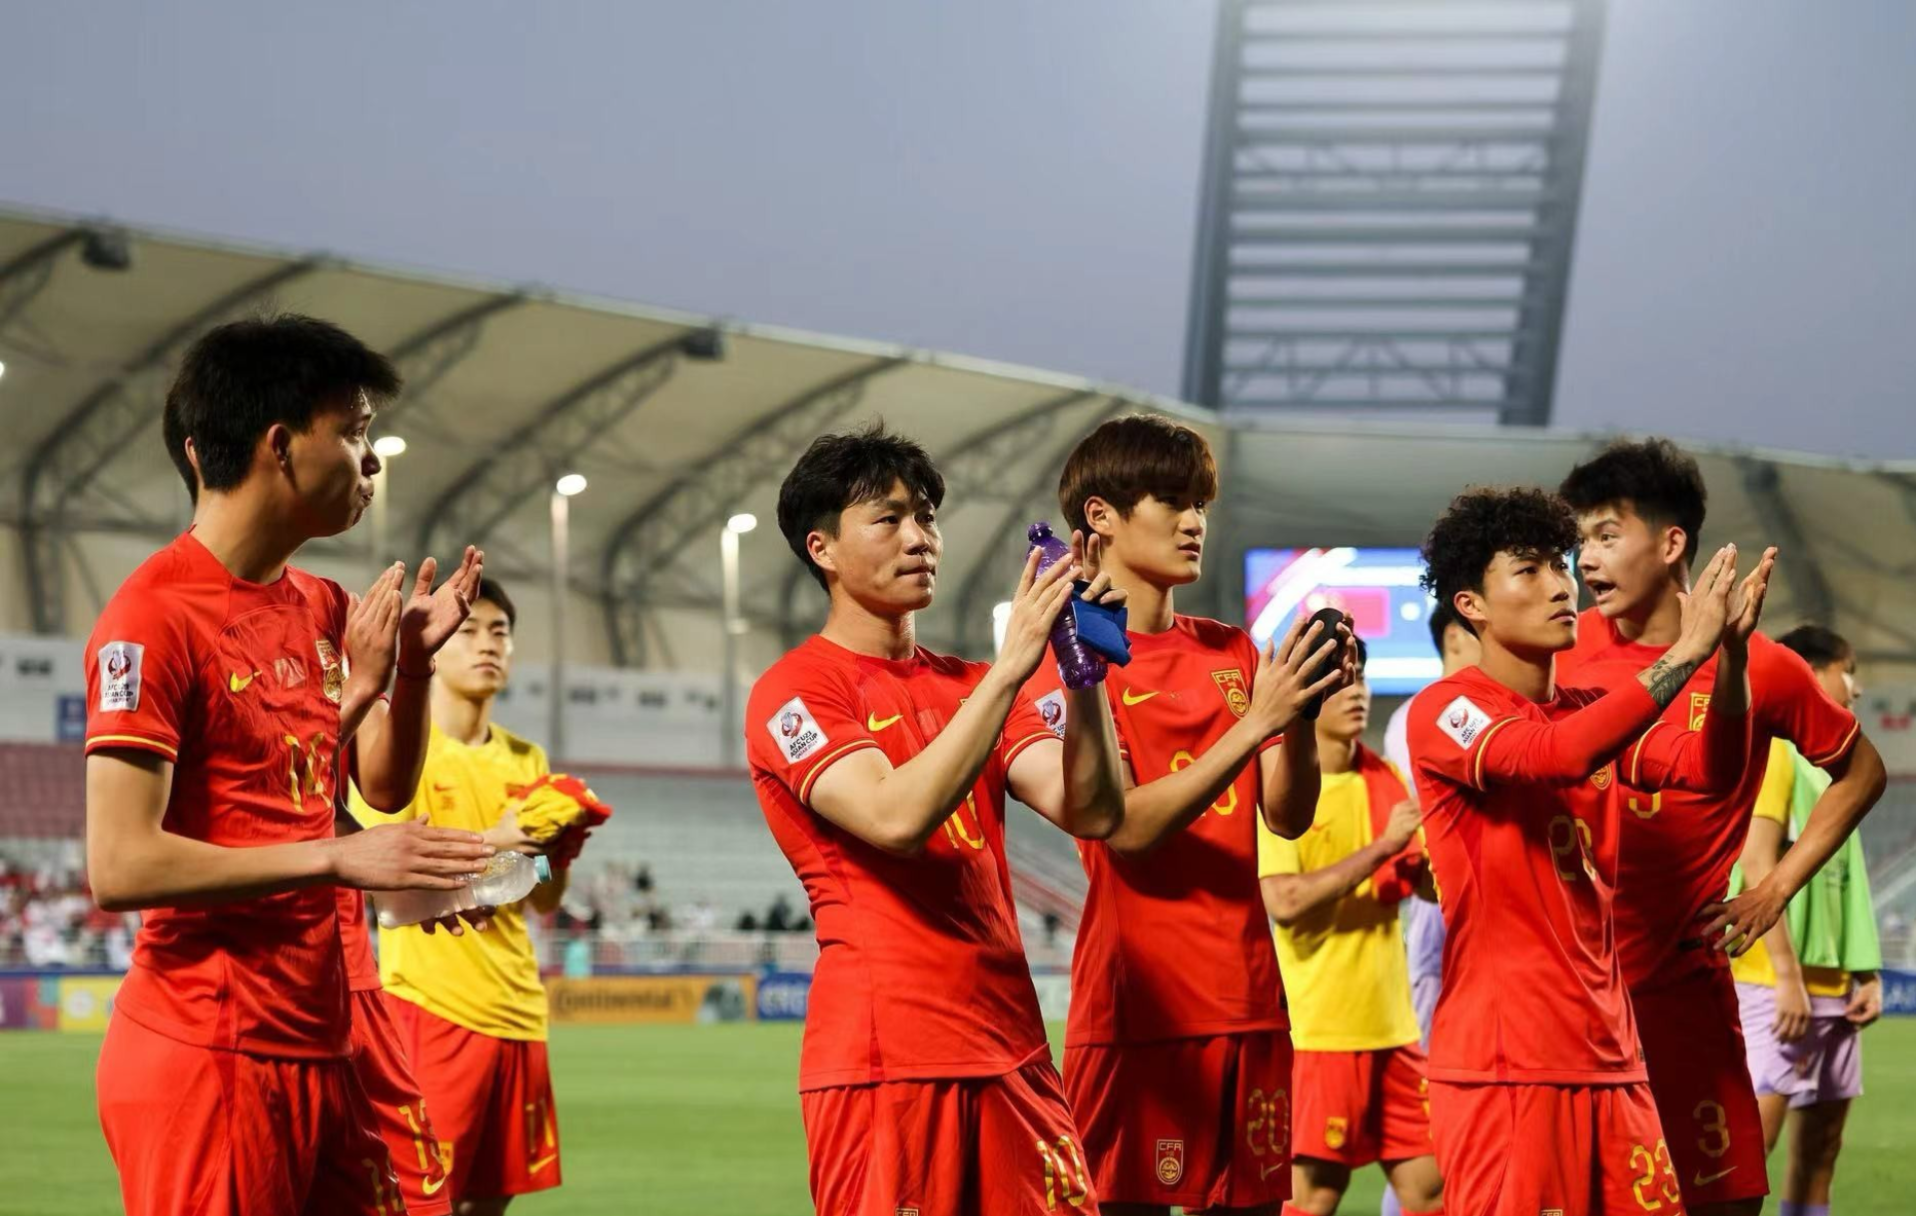 u23亚洲杯中国国奥队0:2韩国国奥队,小组两连败,如何评价这场比赛?